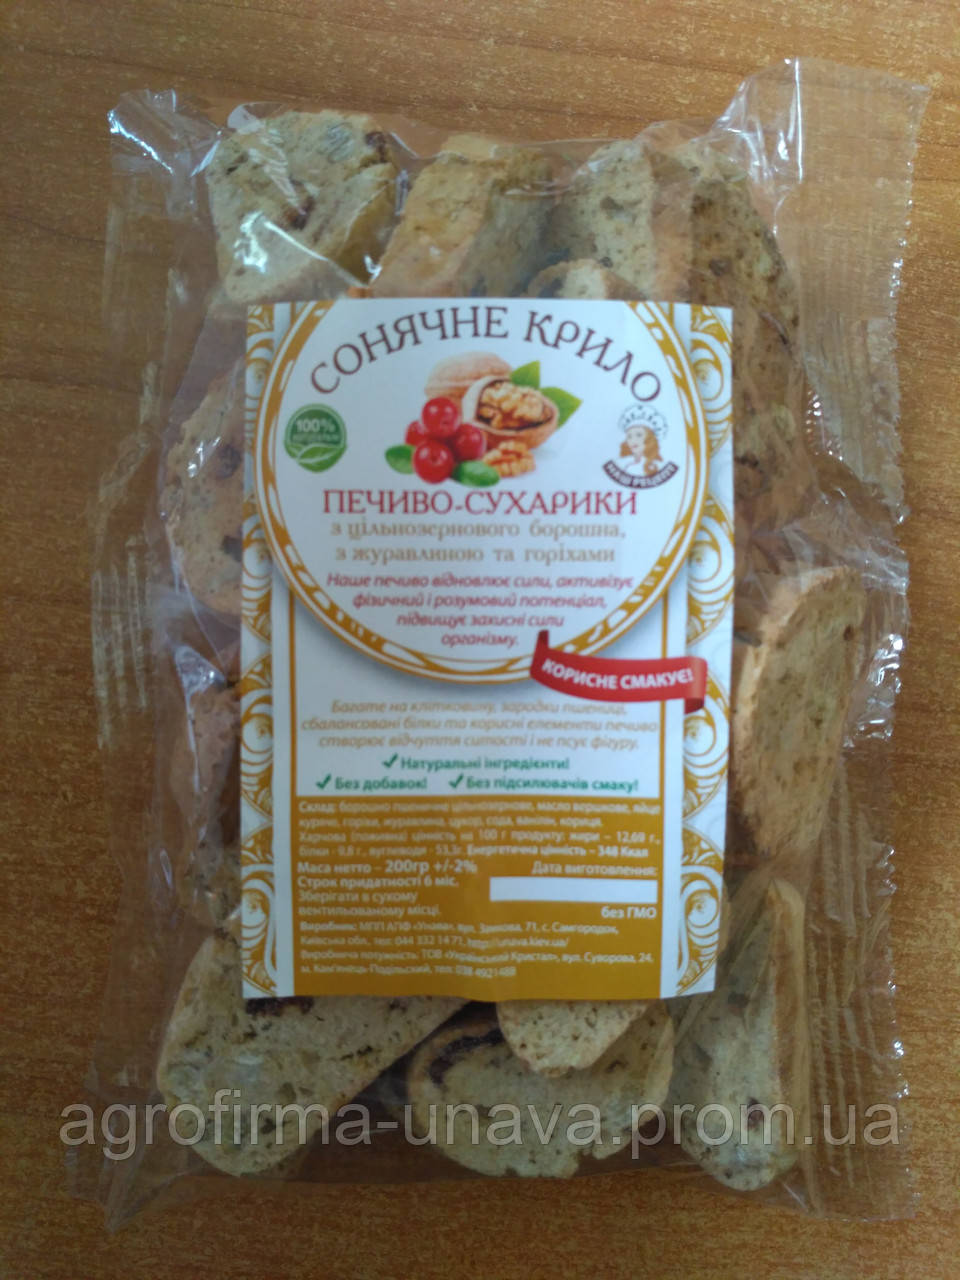 Печиво-сухарики цілозернові з журавлиною та горіхами, 200 г